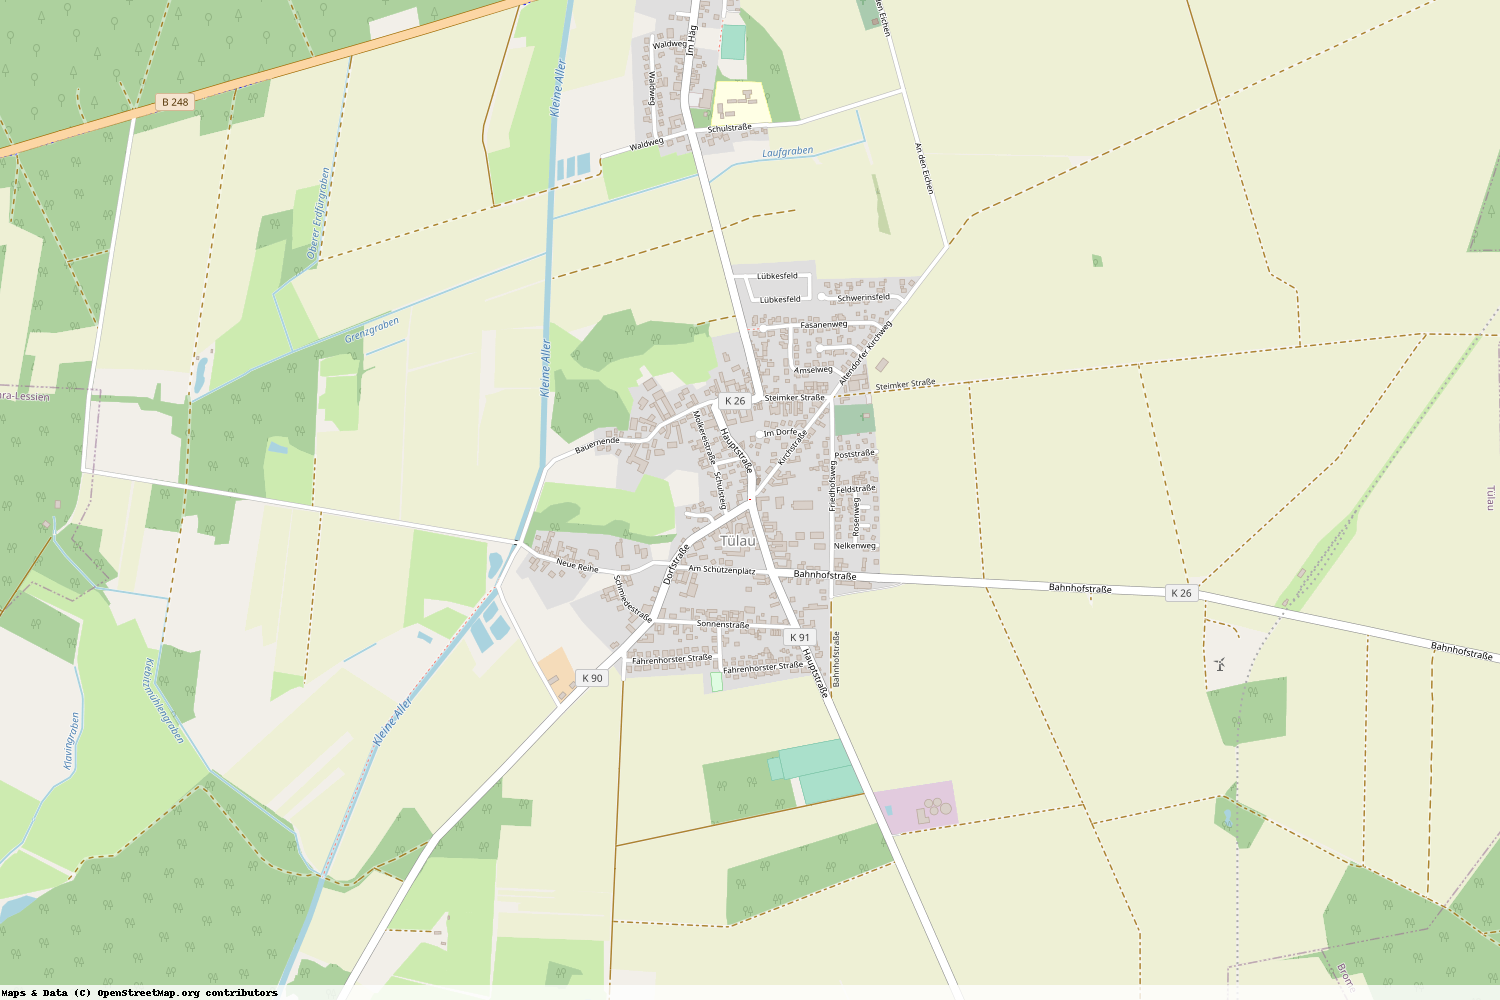 Ist gerade Stromausfall in Niedersachsen - Gifhorn - Tülau?